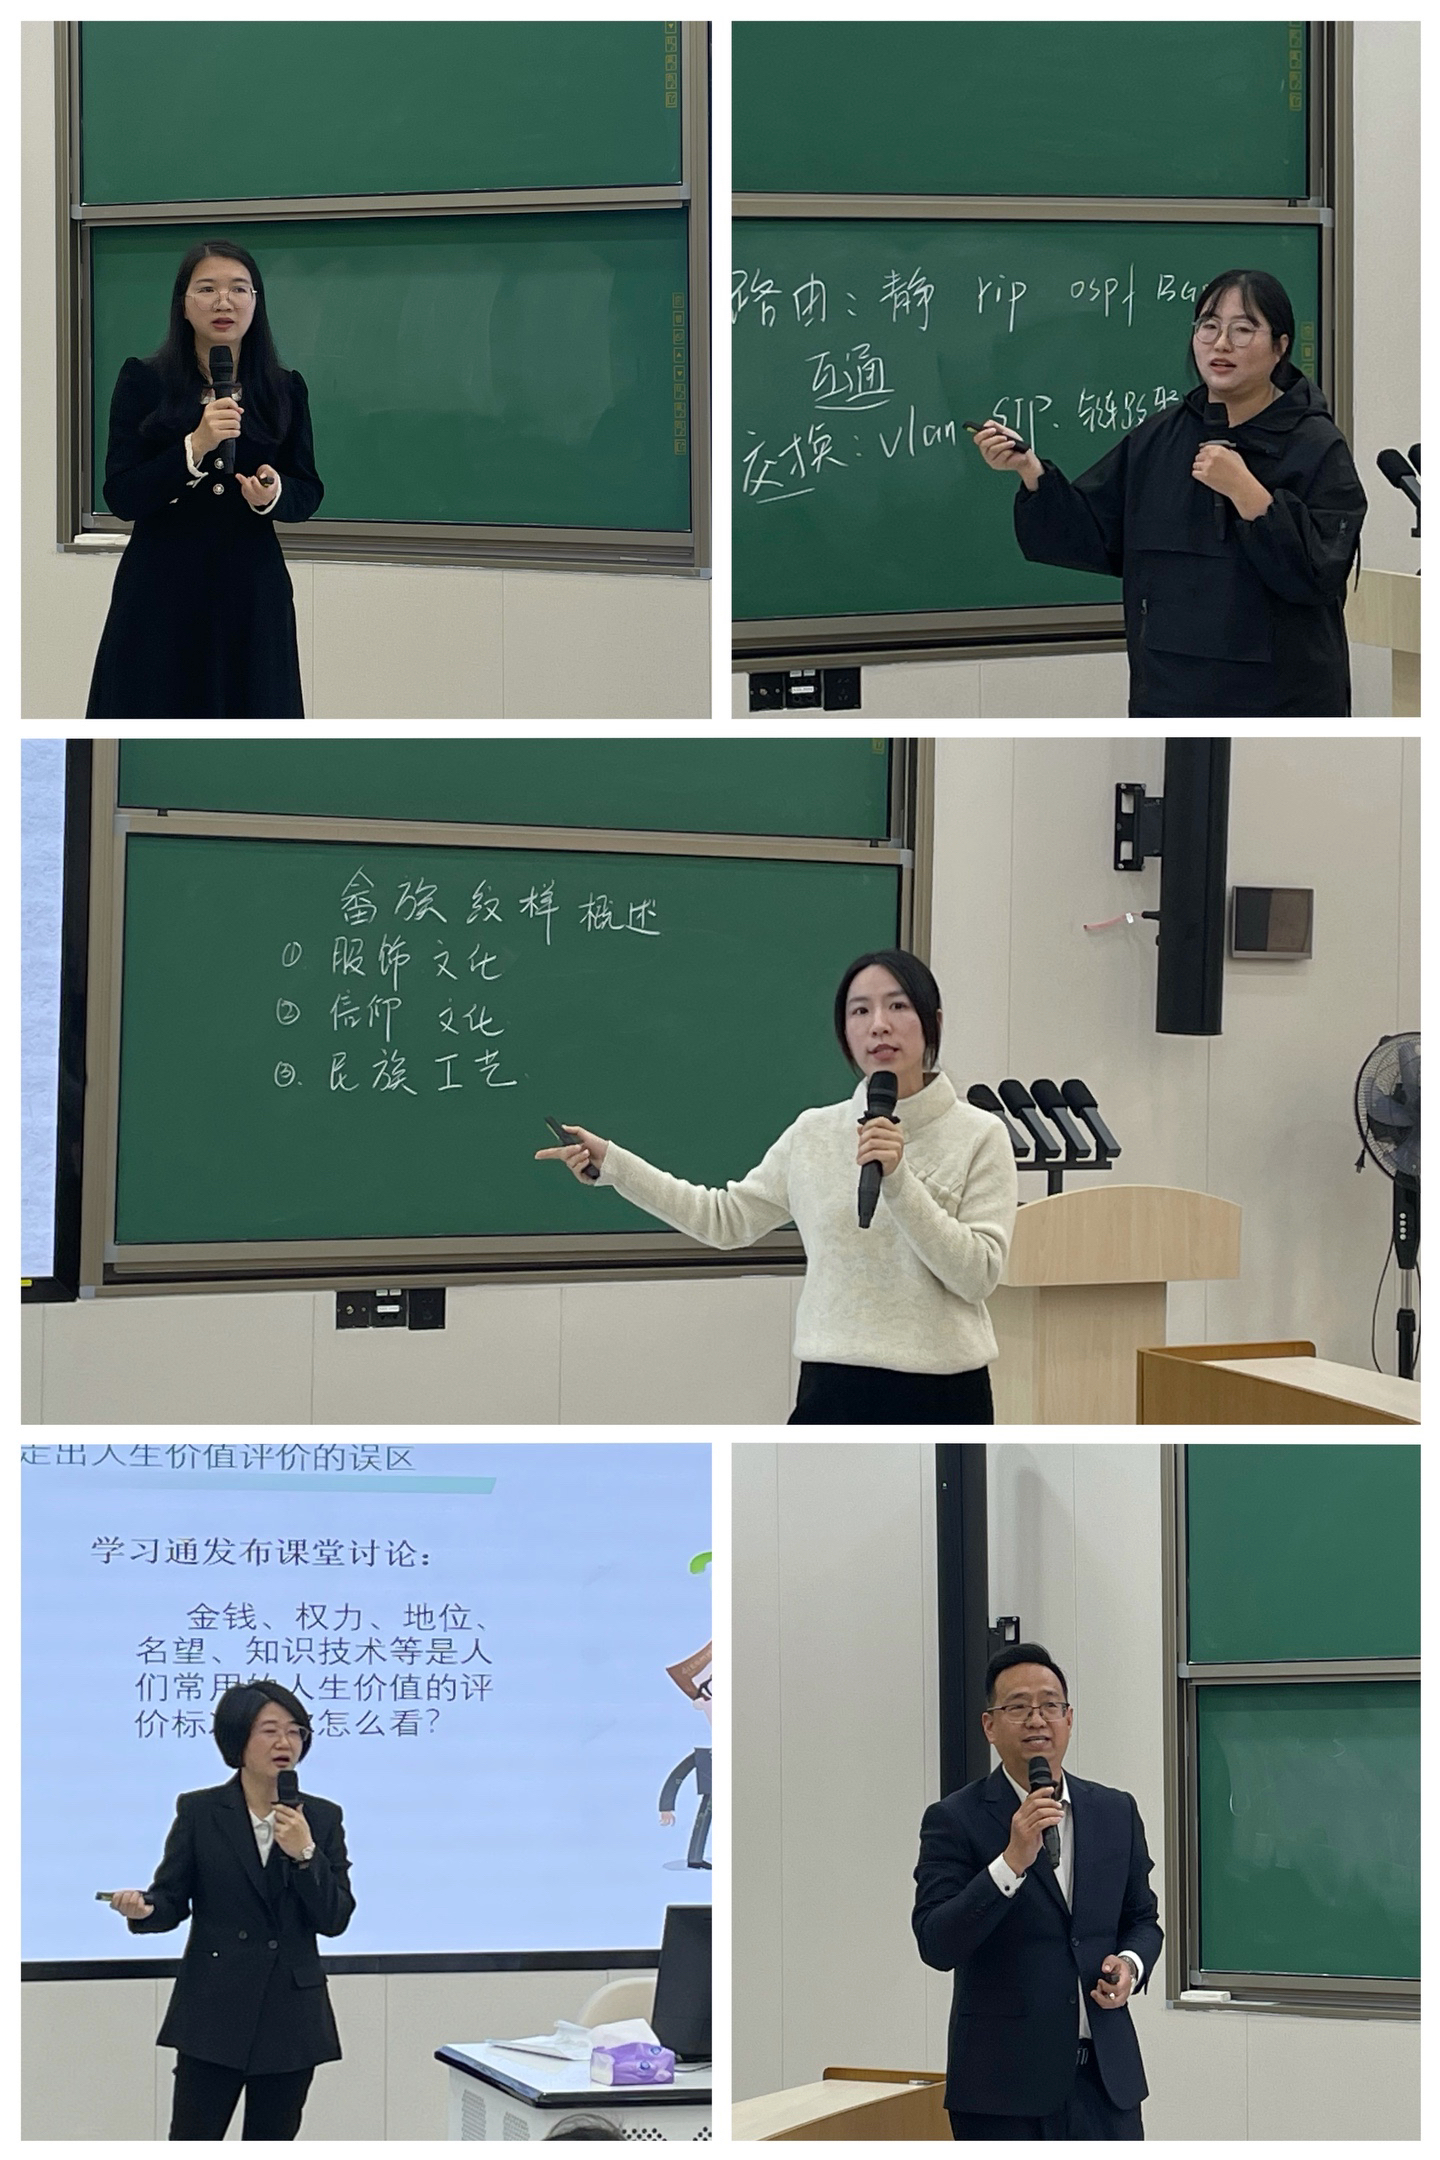 广州华立学院五位老师作模拟讲课